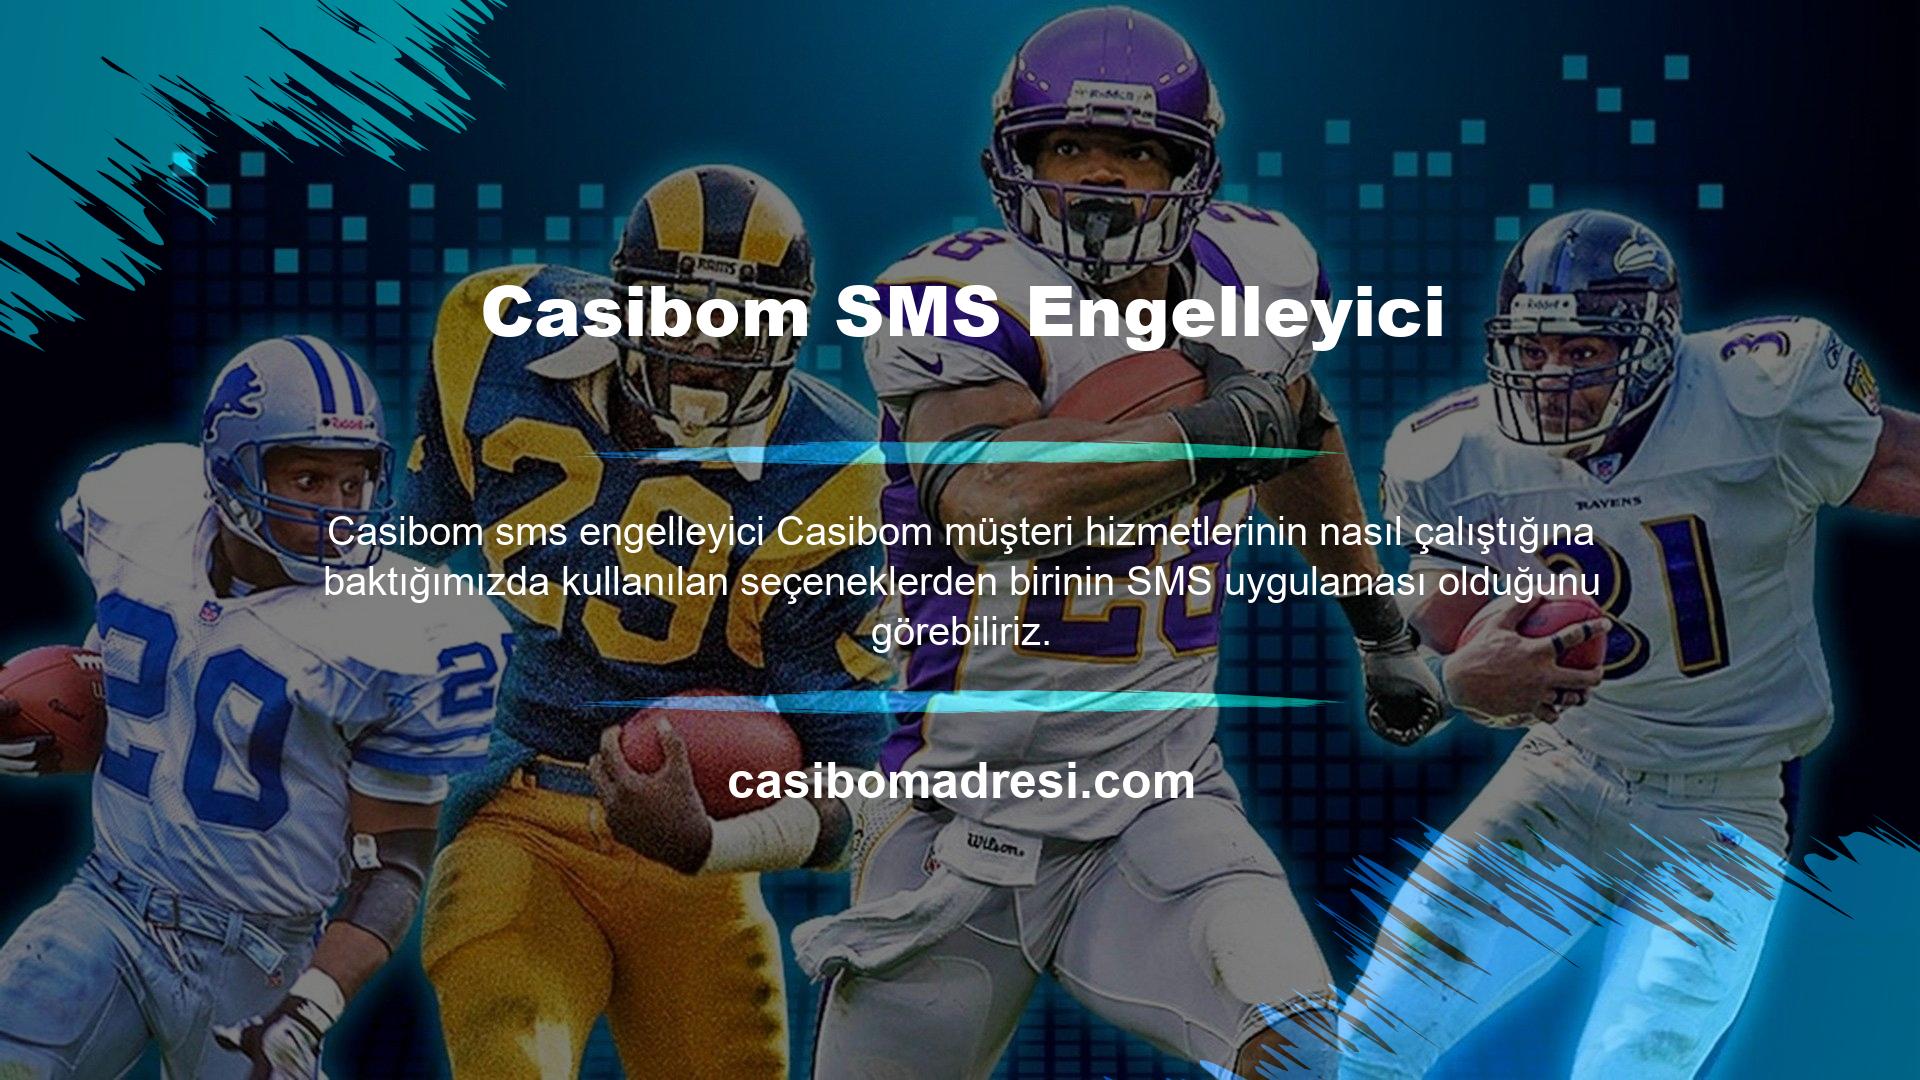 SMS uygulaması Casibom müşteri hizmetleri tarafından kullanıcının cep telefonu numarasına gönderilen SMS'dir